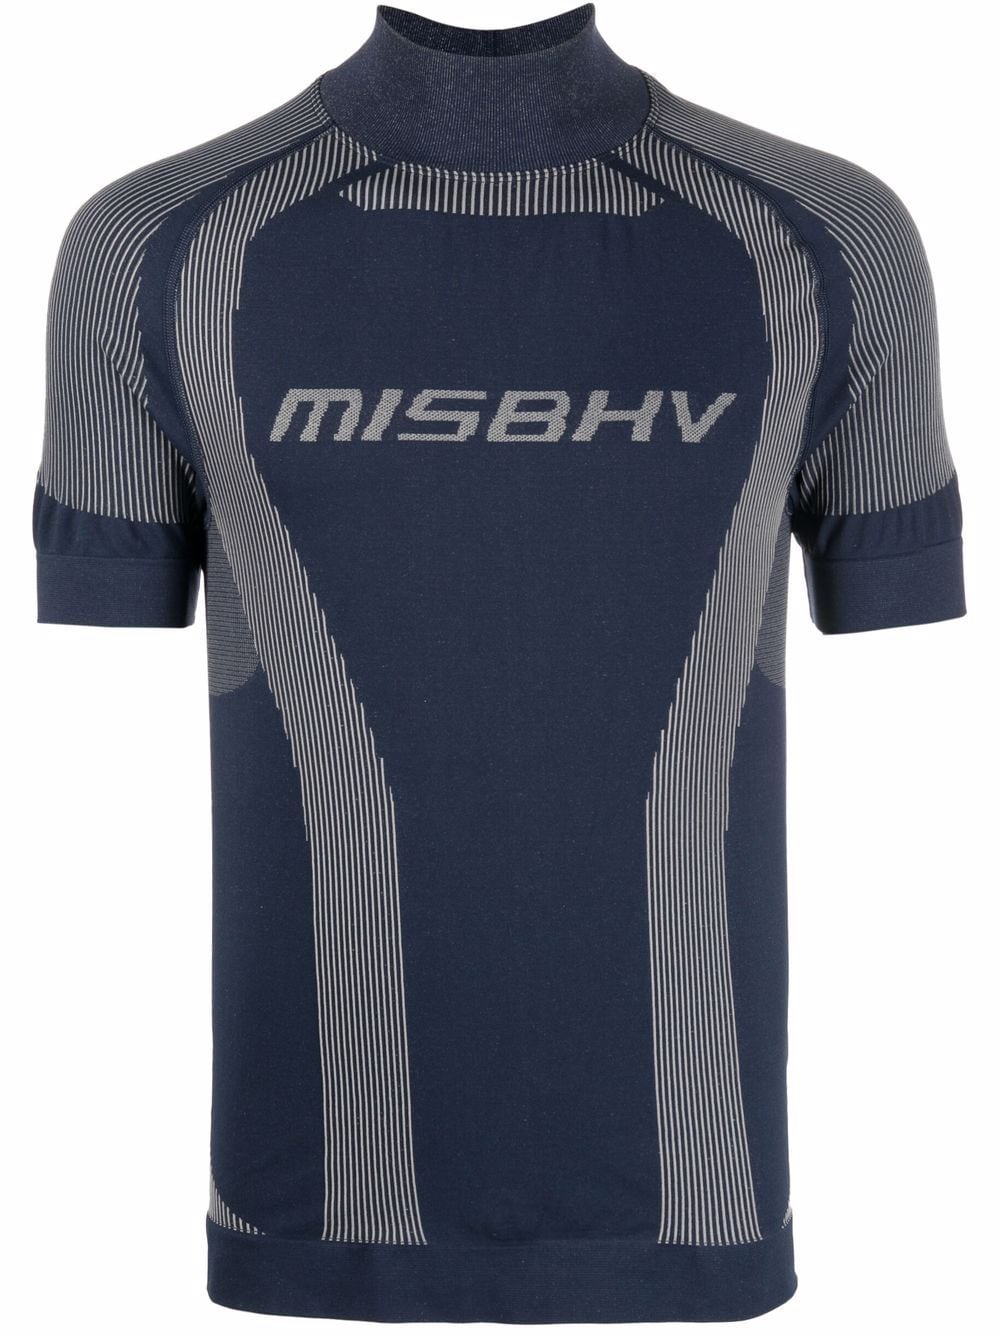 misbhv t-shirt à logo imprimé - bleu